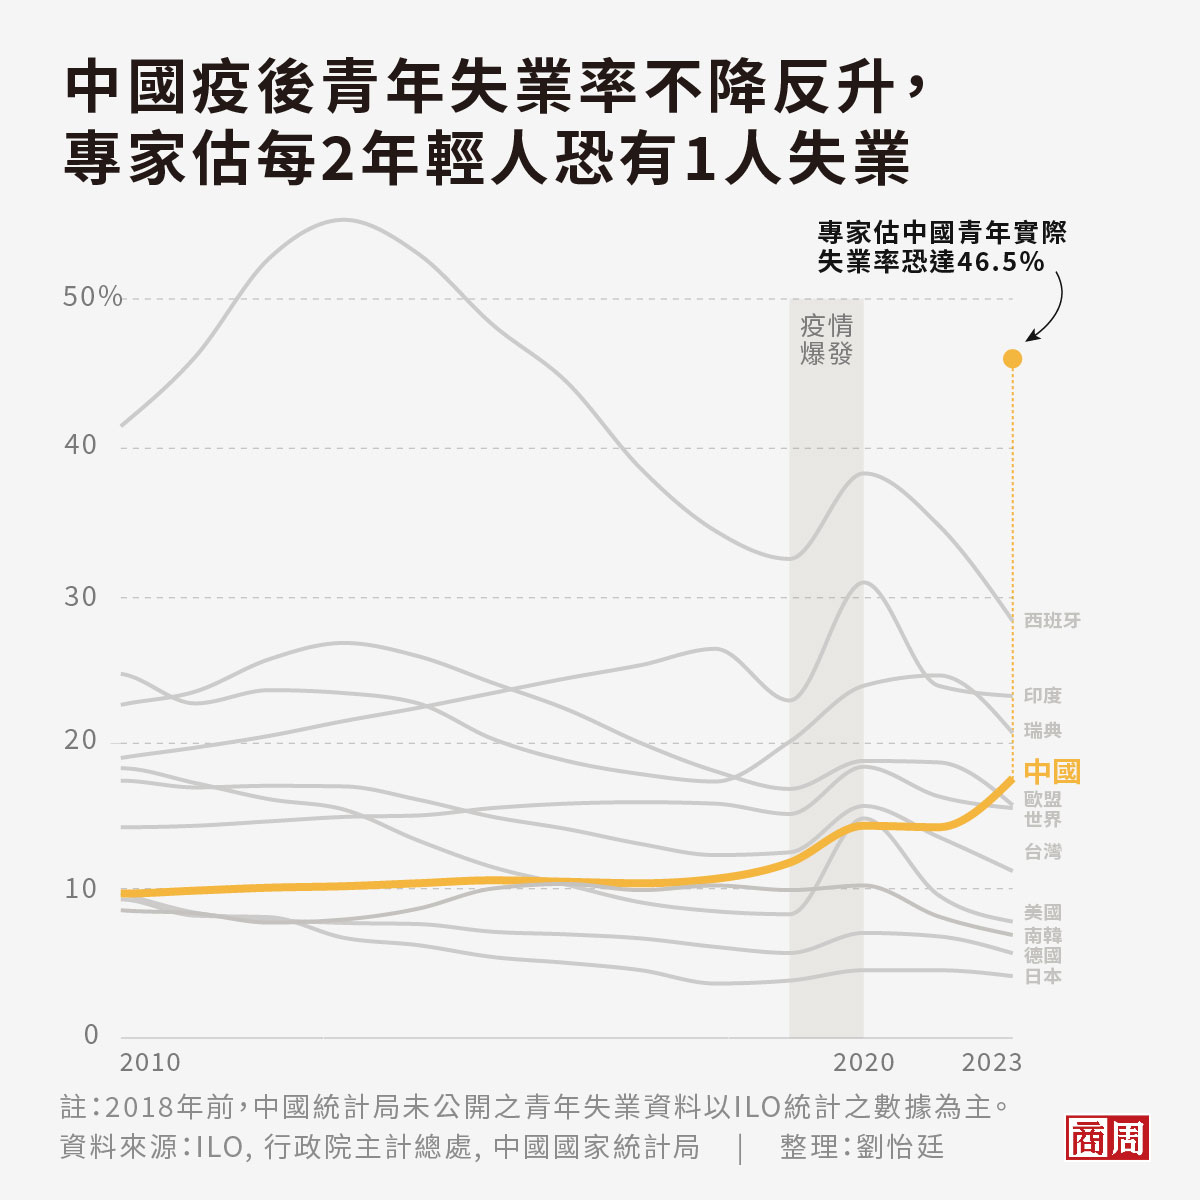 中國官方數據中國青年失業率已達21.3%，相當於每5名中國年輕人就有1名失業。